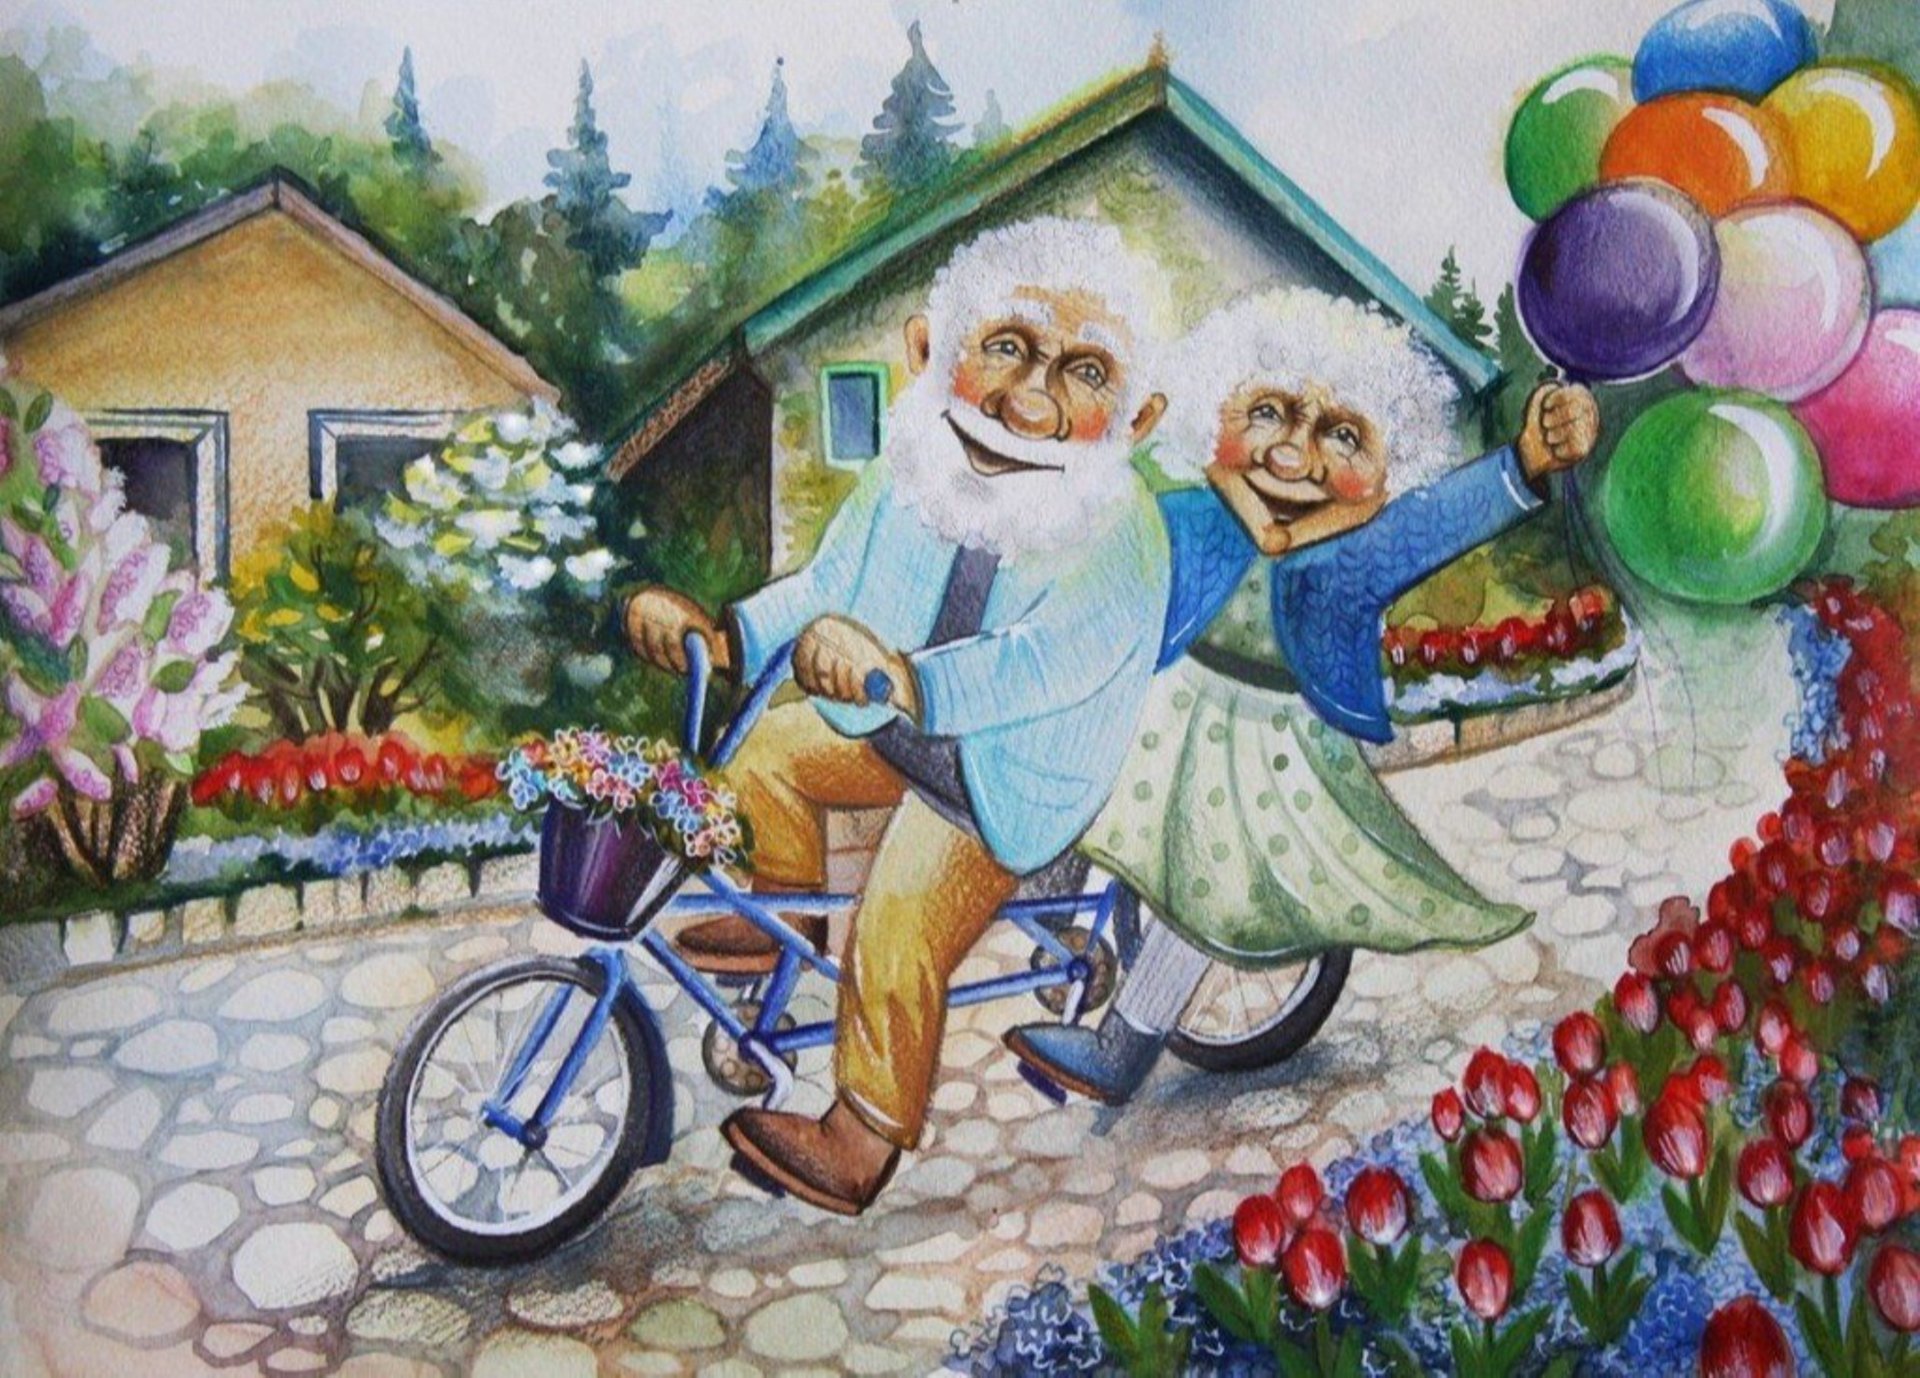 Внучка ехала. Открытки для пожилых людей. Счастливые старики иллюстрации. Картины пожилых людей. Бабушка рядышком с дедушкой.